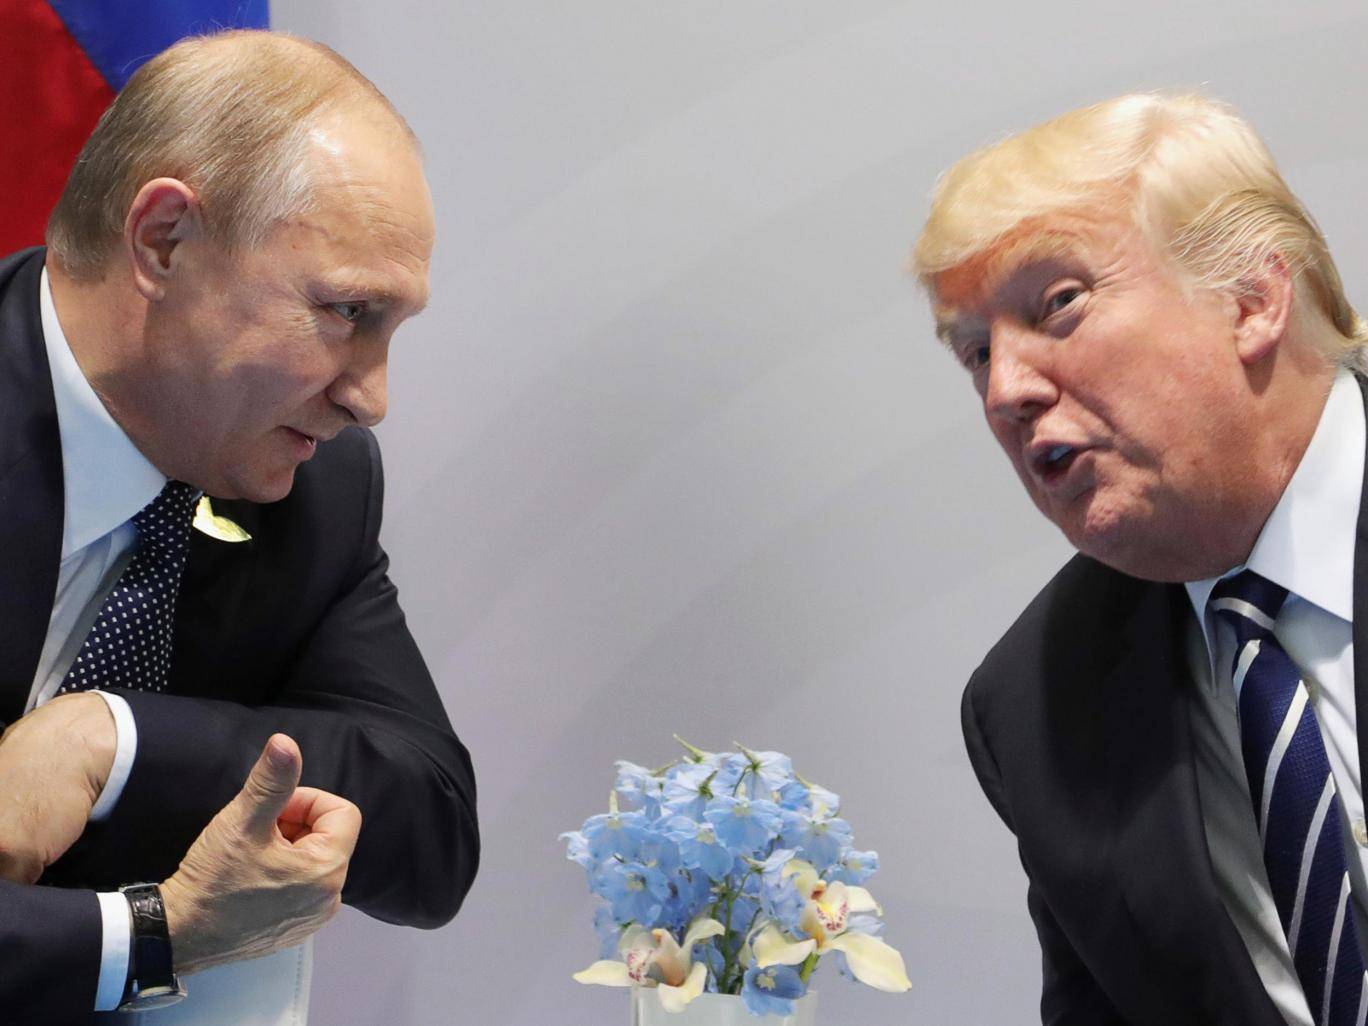 دونالد ترامب لقاء فلاديمير بوتين غدا حيث يتزايد التحقيق في تدخل روسيا في الانتخابات الأمريكية